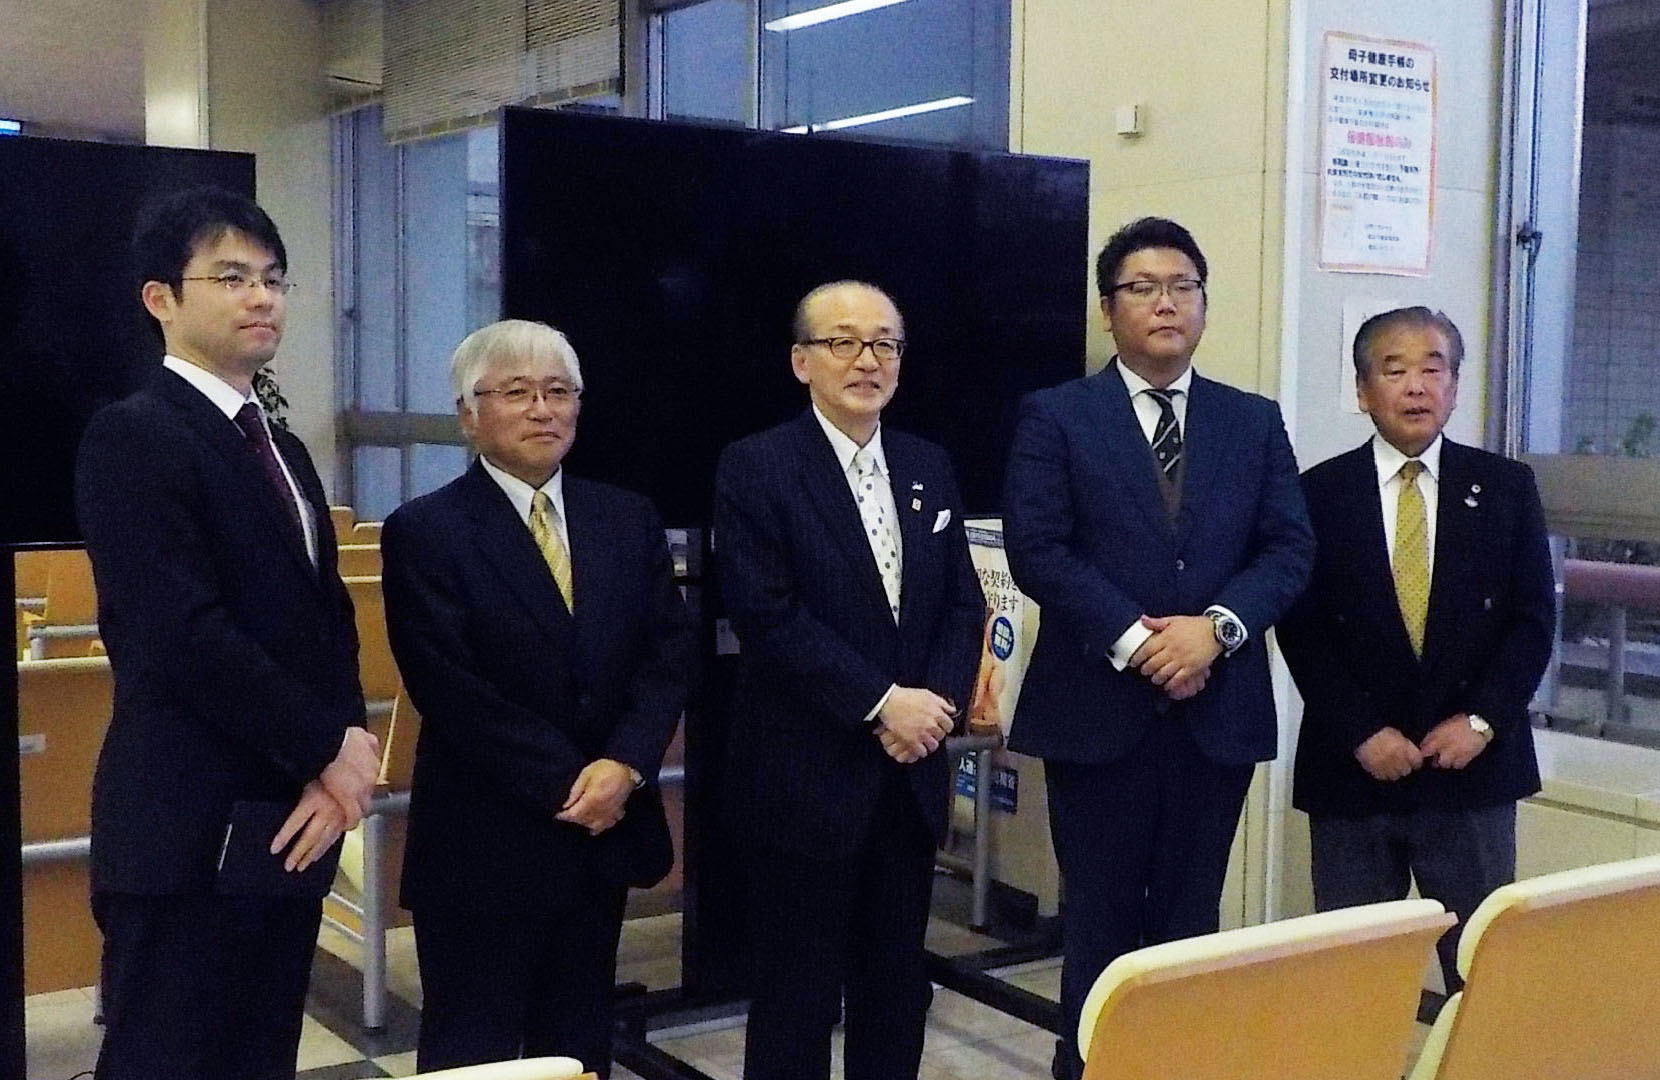 テレビモニター前で小泉市長と成田グリーンライオンズクラブの皆さまの写真